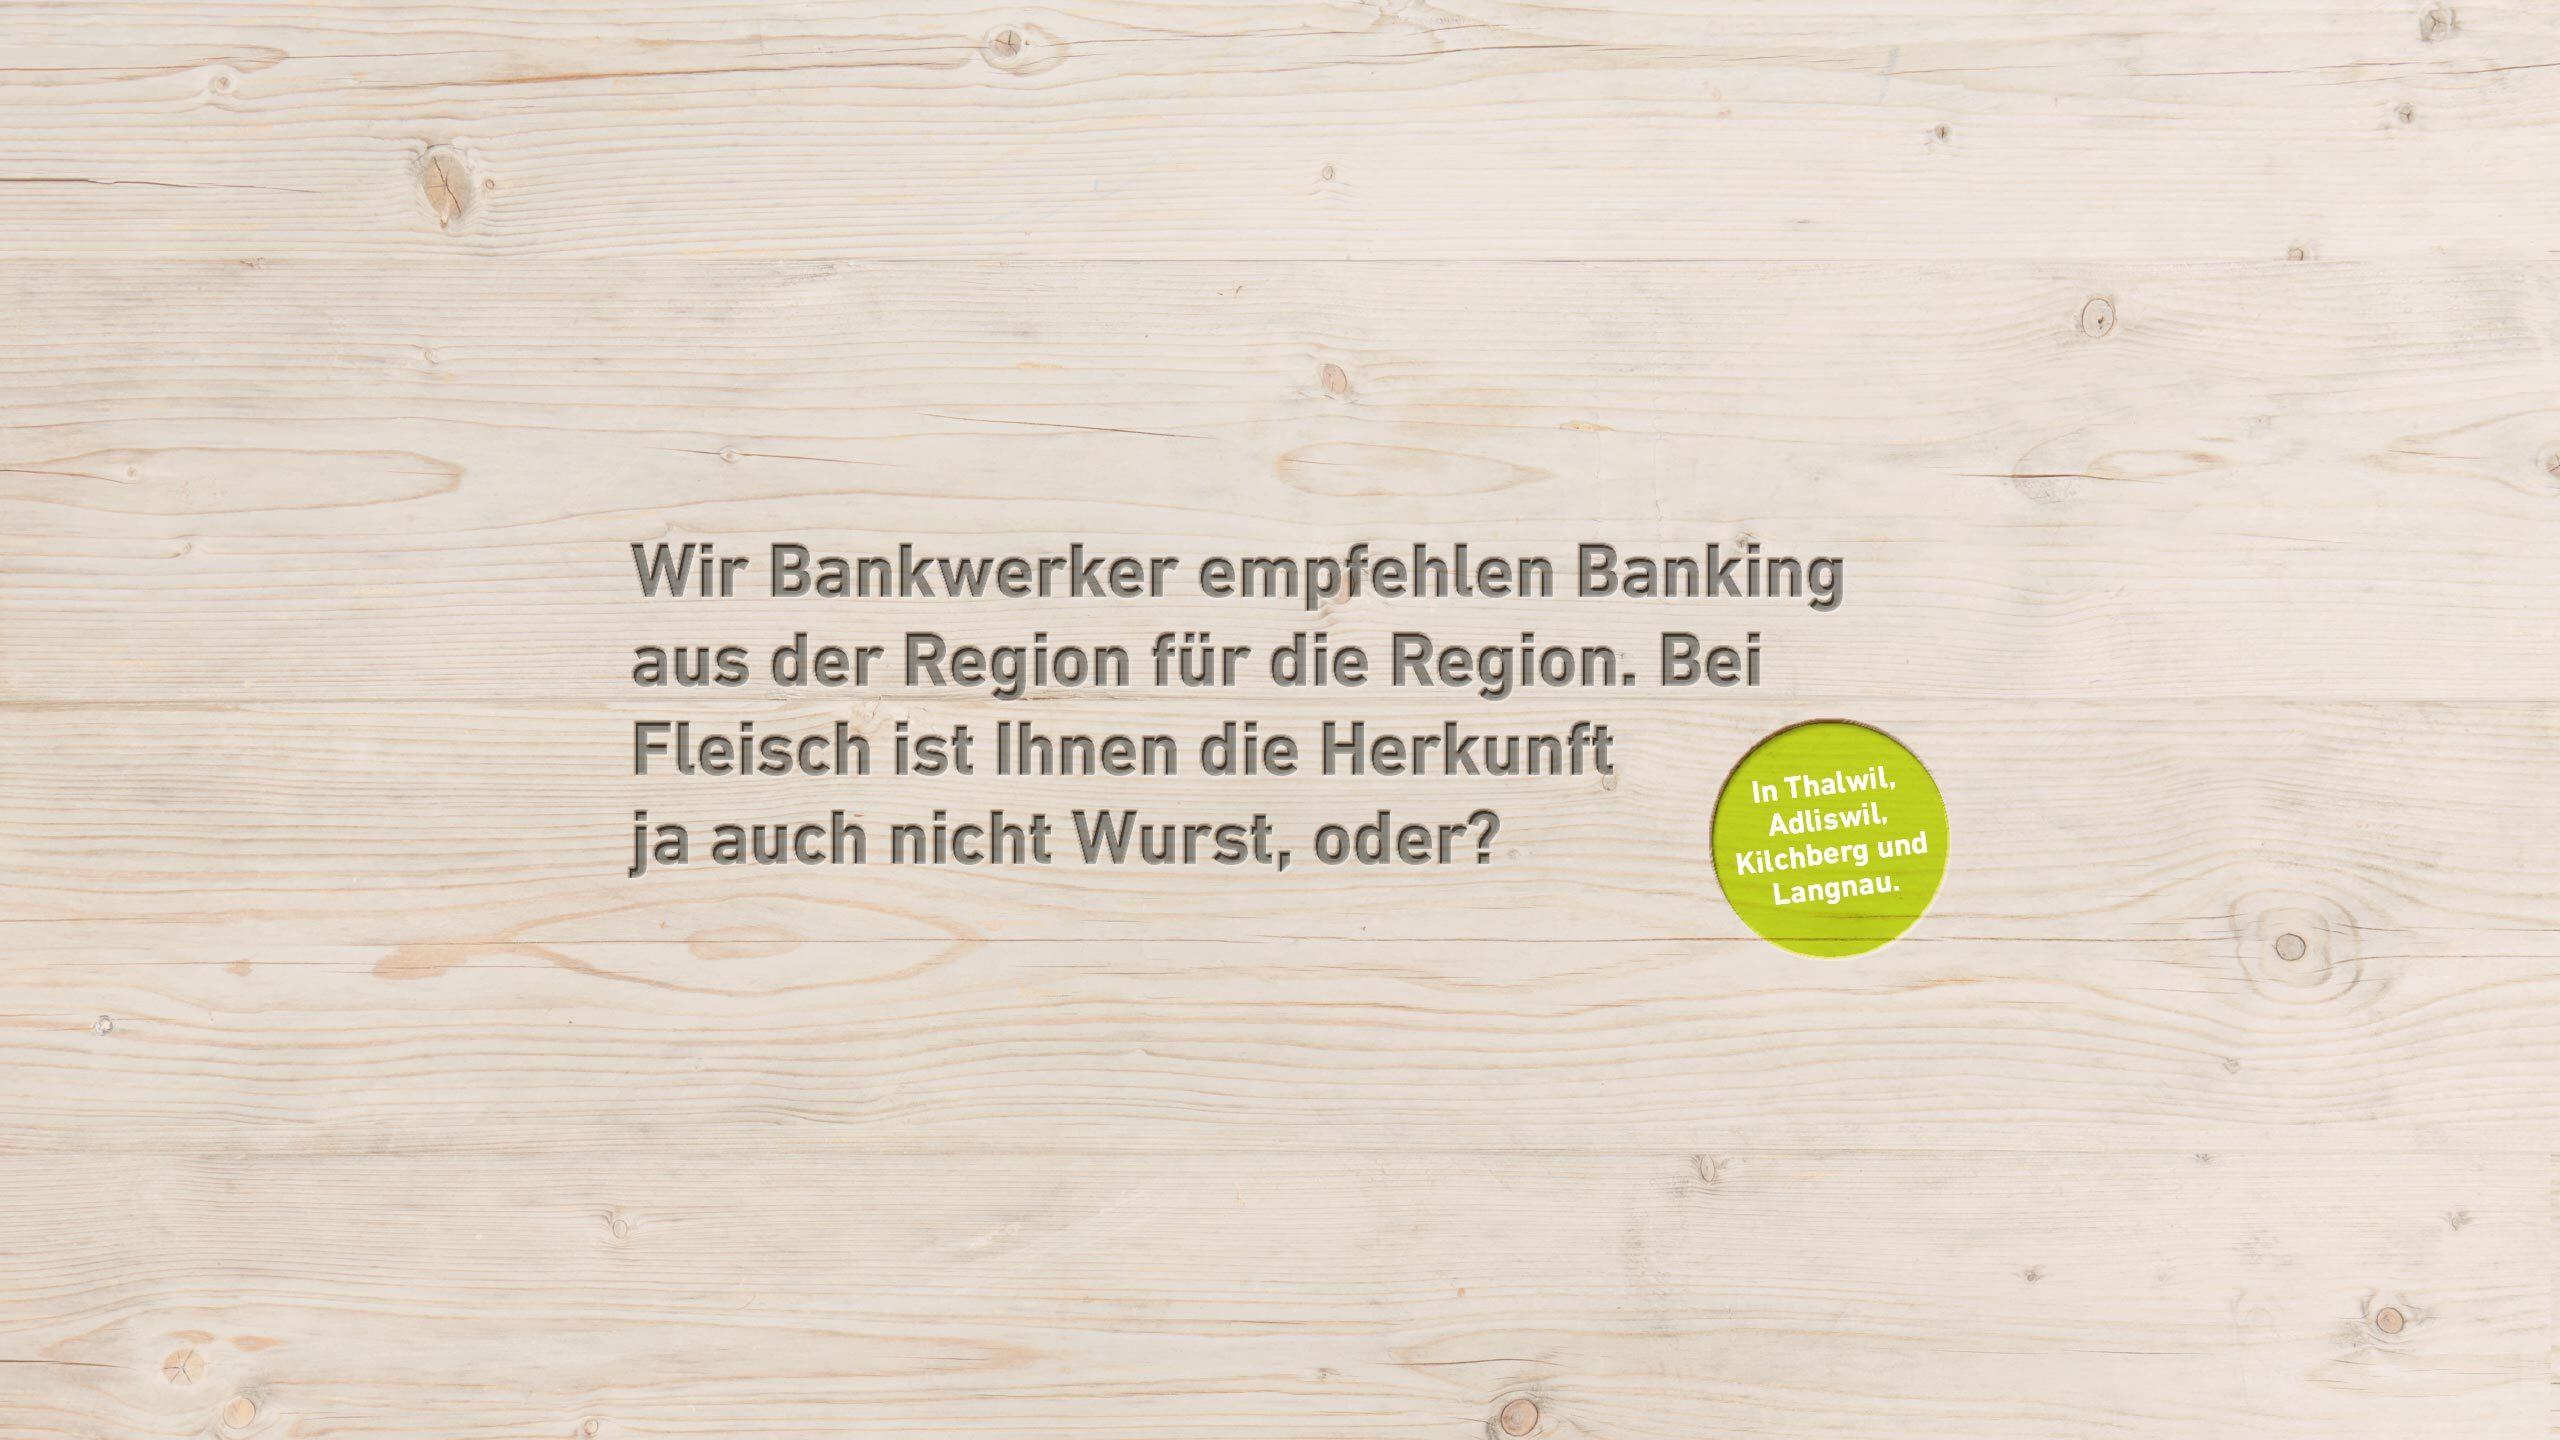 Wir Bankwerker empfehlen Banking aus der Region für die Region.